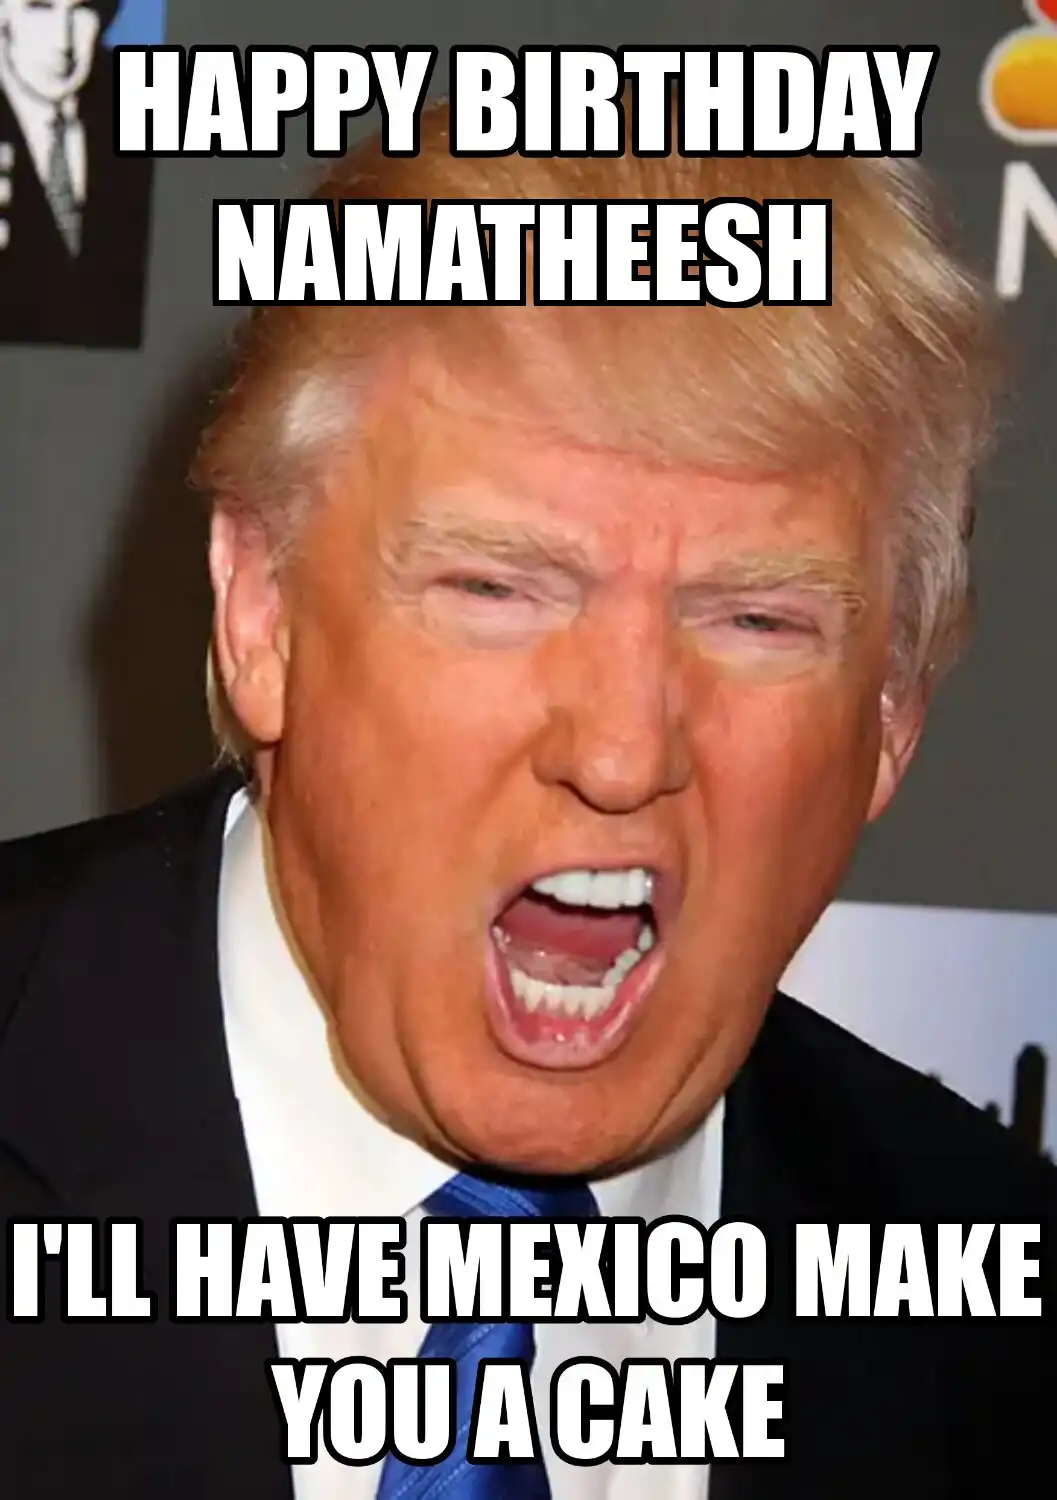 Happy Birthday Namatheesh Mexico Make You A Cake Meme